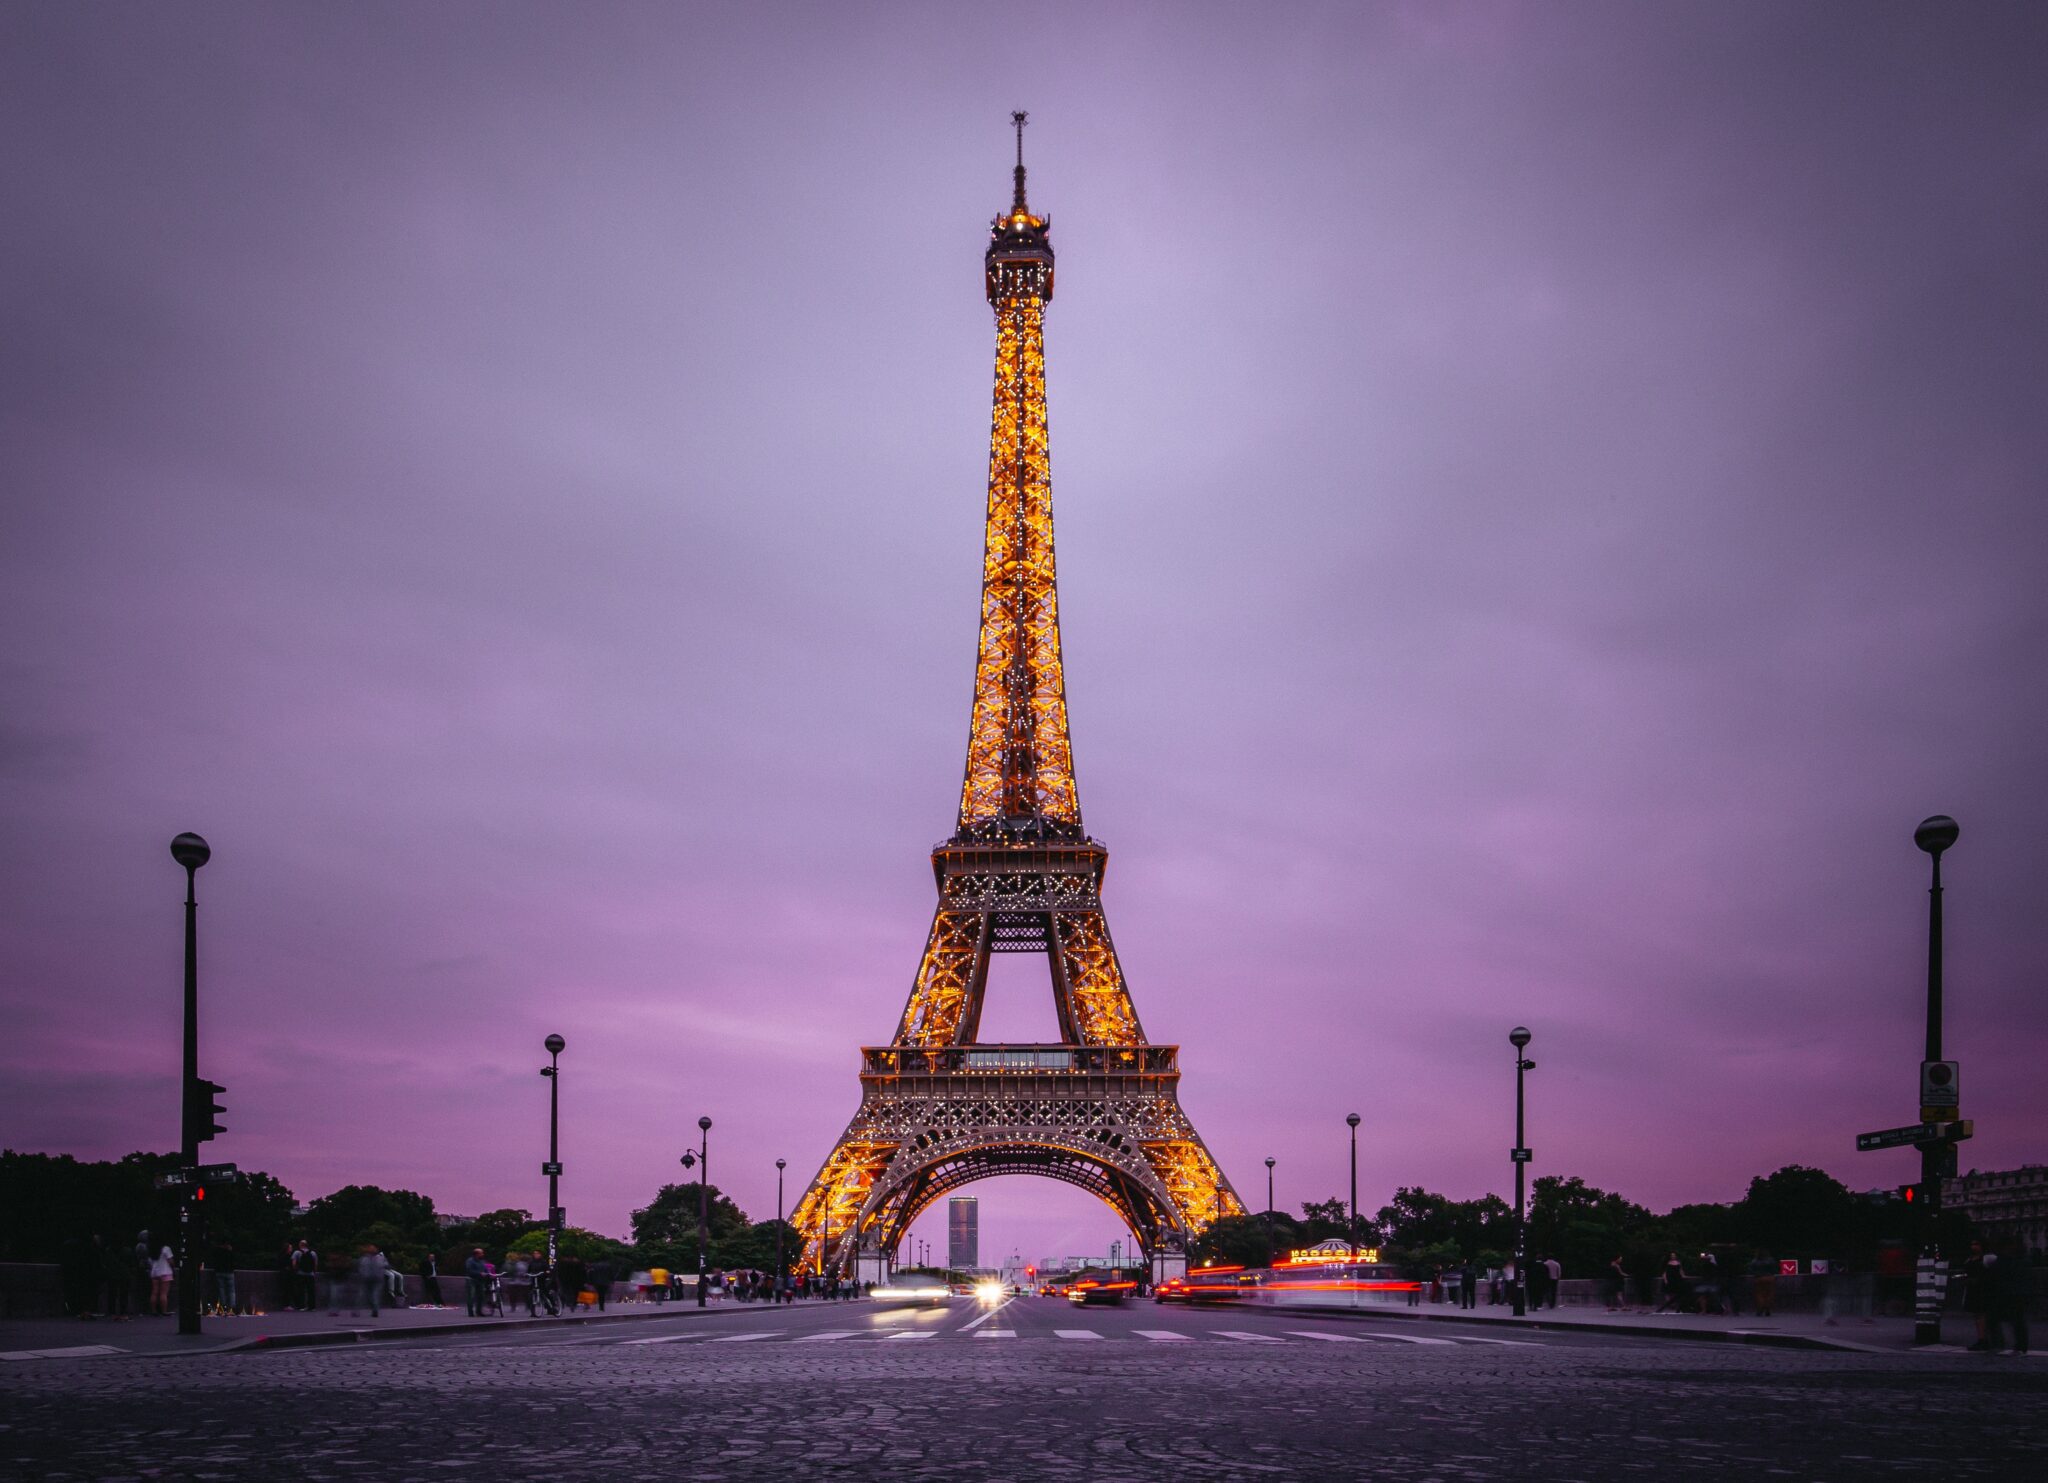 Paris Eiffel tower. Photographer: Denys Nevozhai. Source: https://unsplash.com/photos/UzagqG756OU